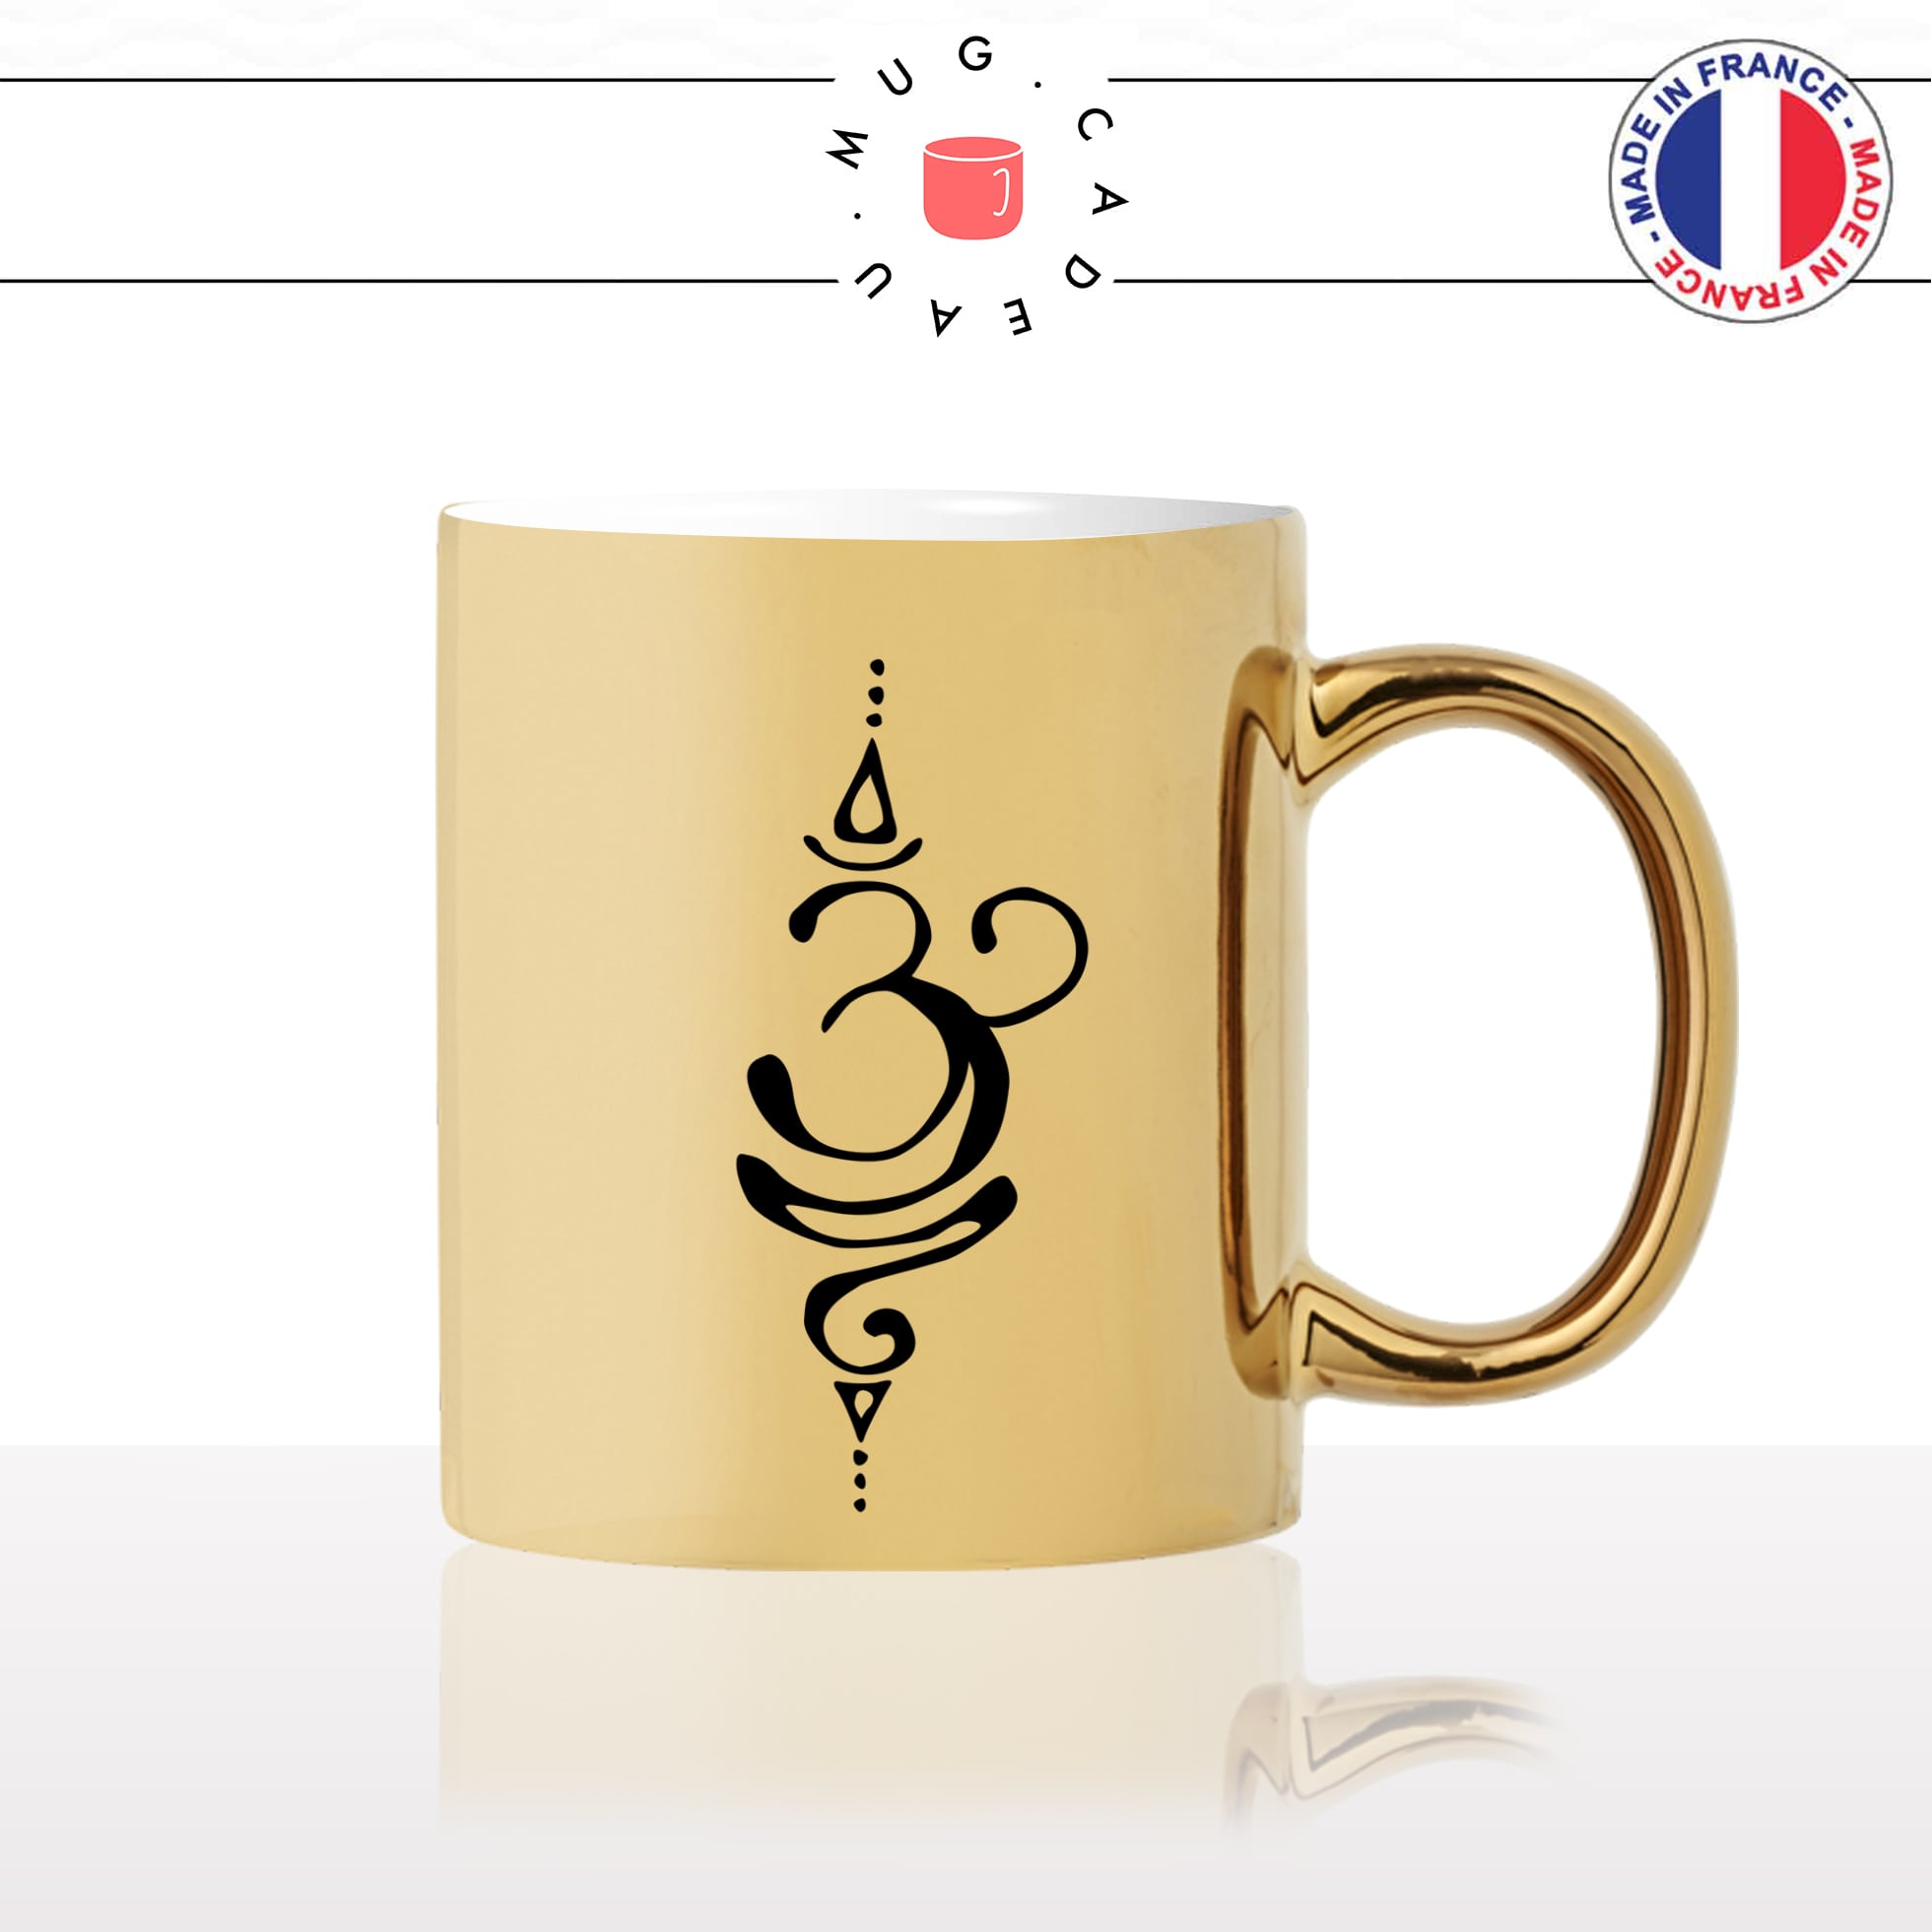 mug-tasse-gold-or-doré-symbol-bouddhiste-bouddha-buddha-indou-meditation-yoga-forme-dessin-original-fun-idée-cadeau-personnalisé-café-thé2-min